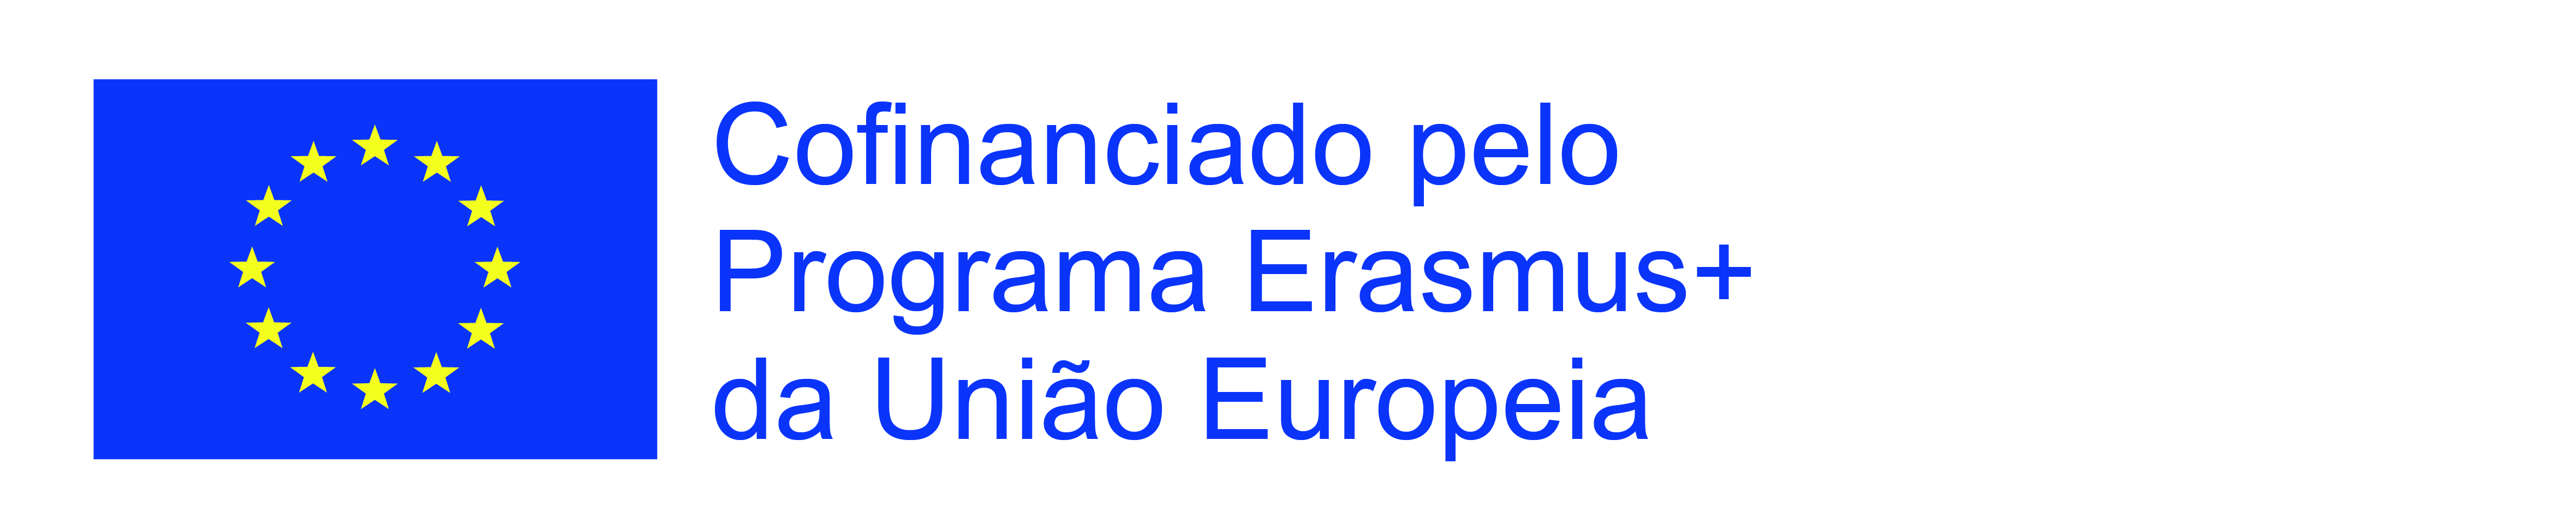 Logótipo do co-financiamento pelo Erasmus+